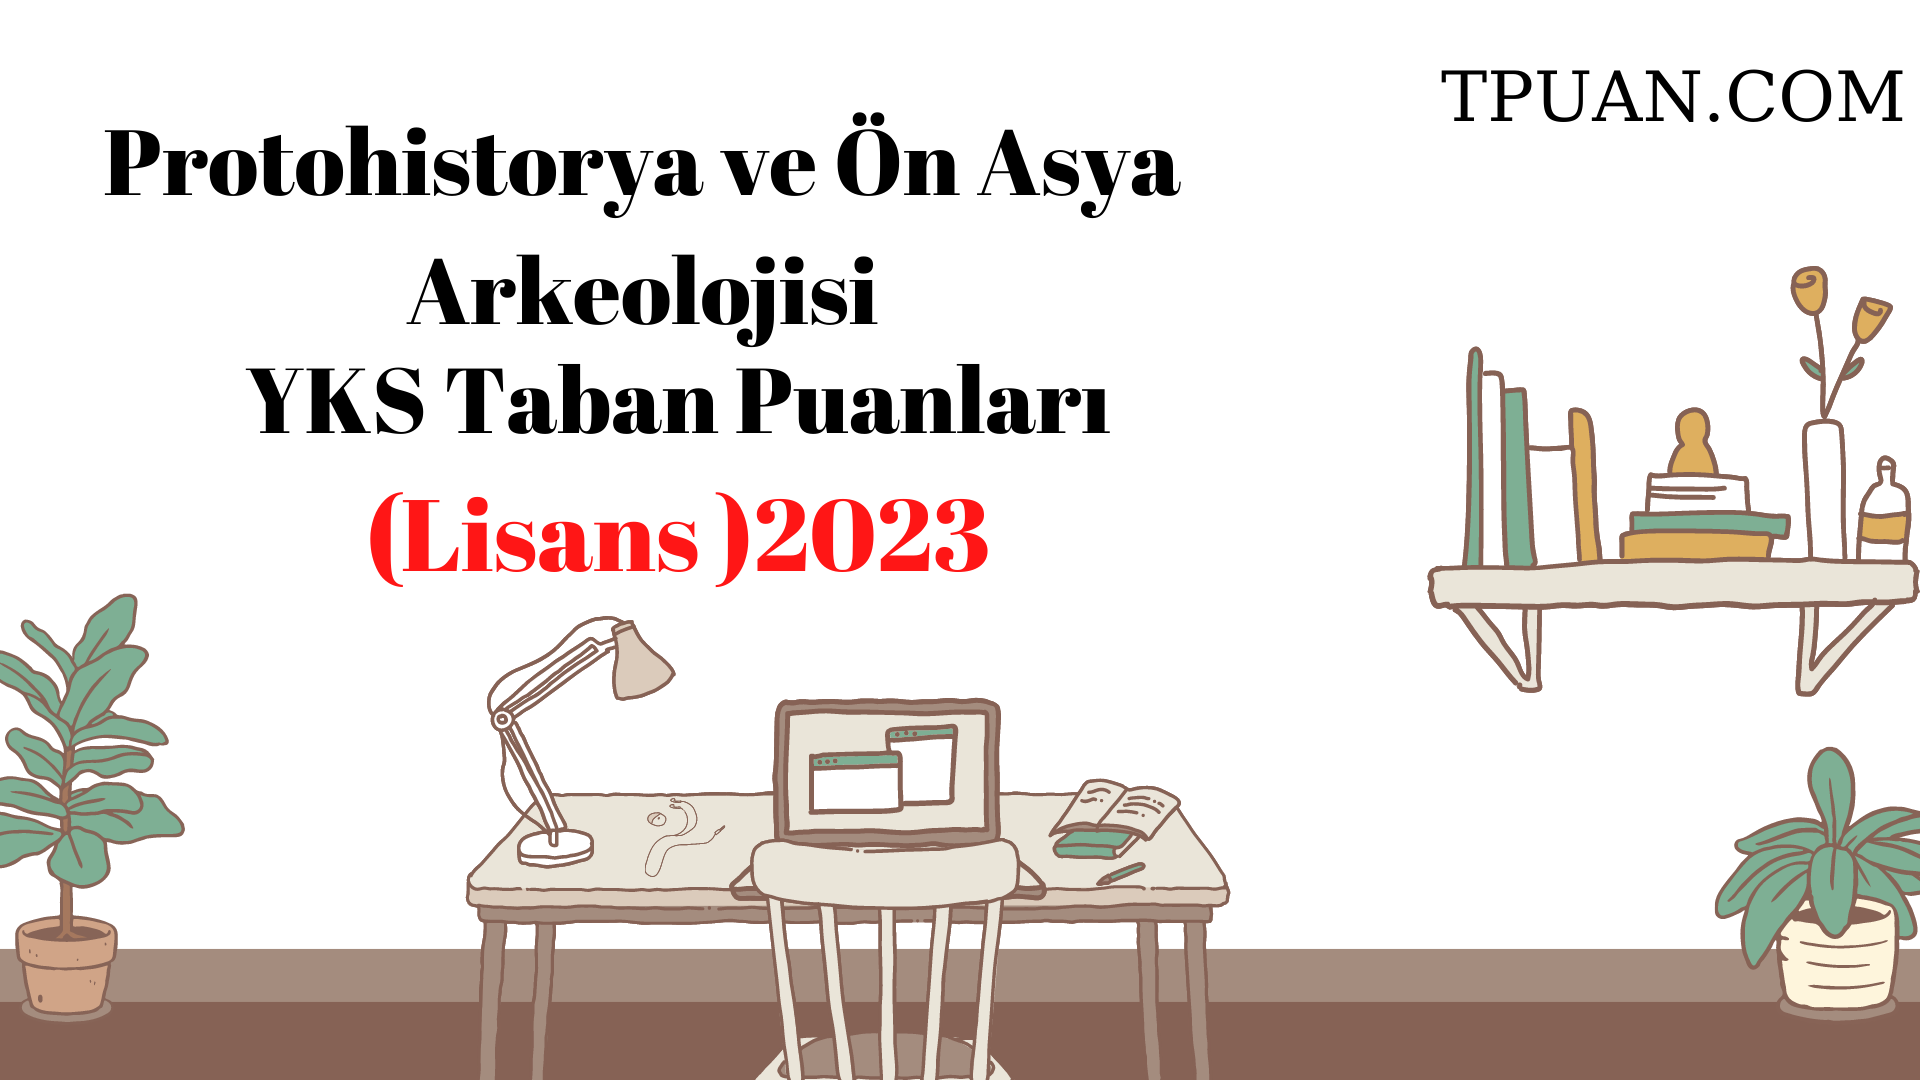  Protohistorya ve Ön Asya Arkeolojisi Bölümü YKS Taban Puanları (4 Yıllık) 2023